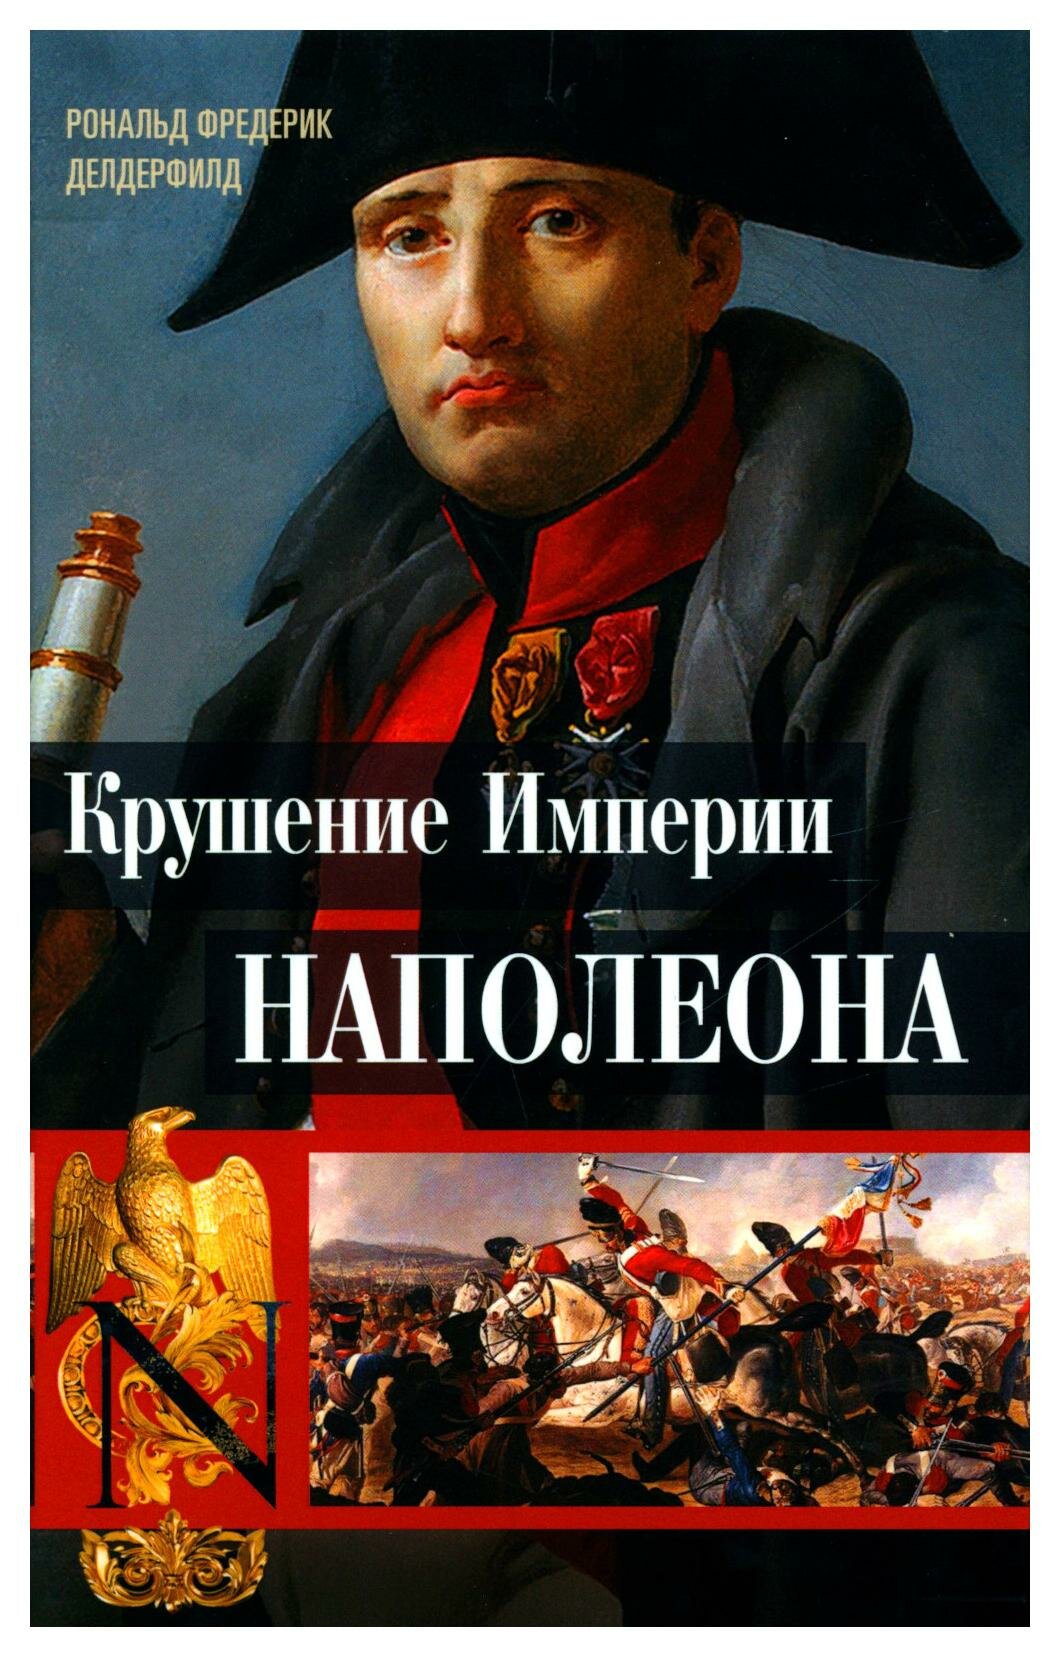 Крушение империи Наполеона. Военно-исторические хроники - фото №1